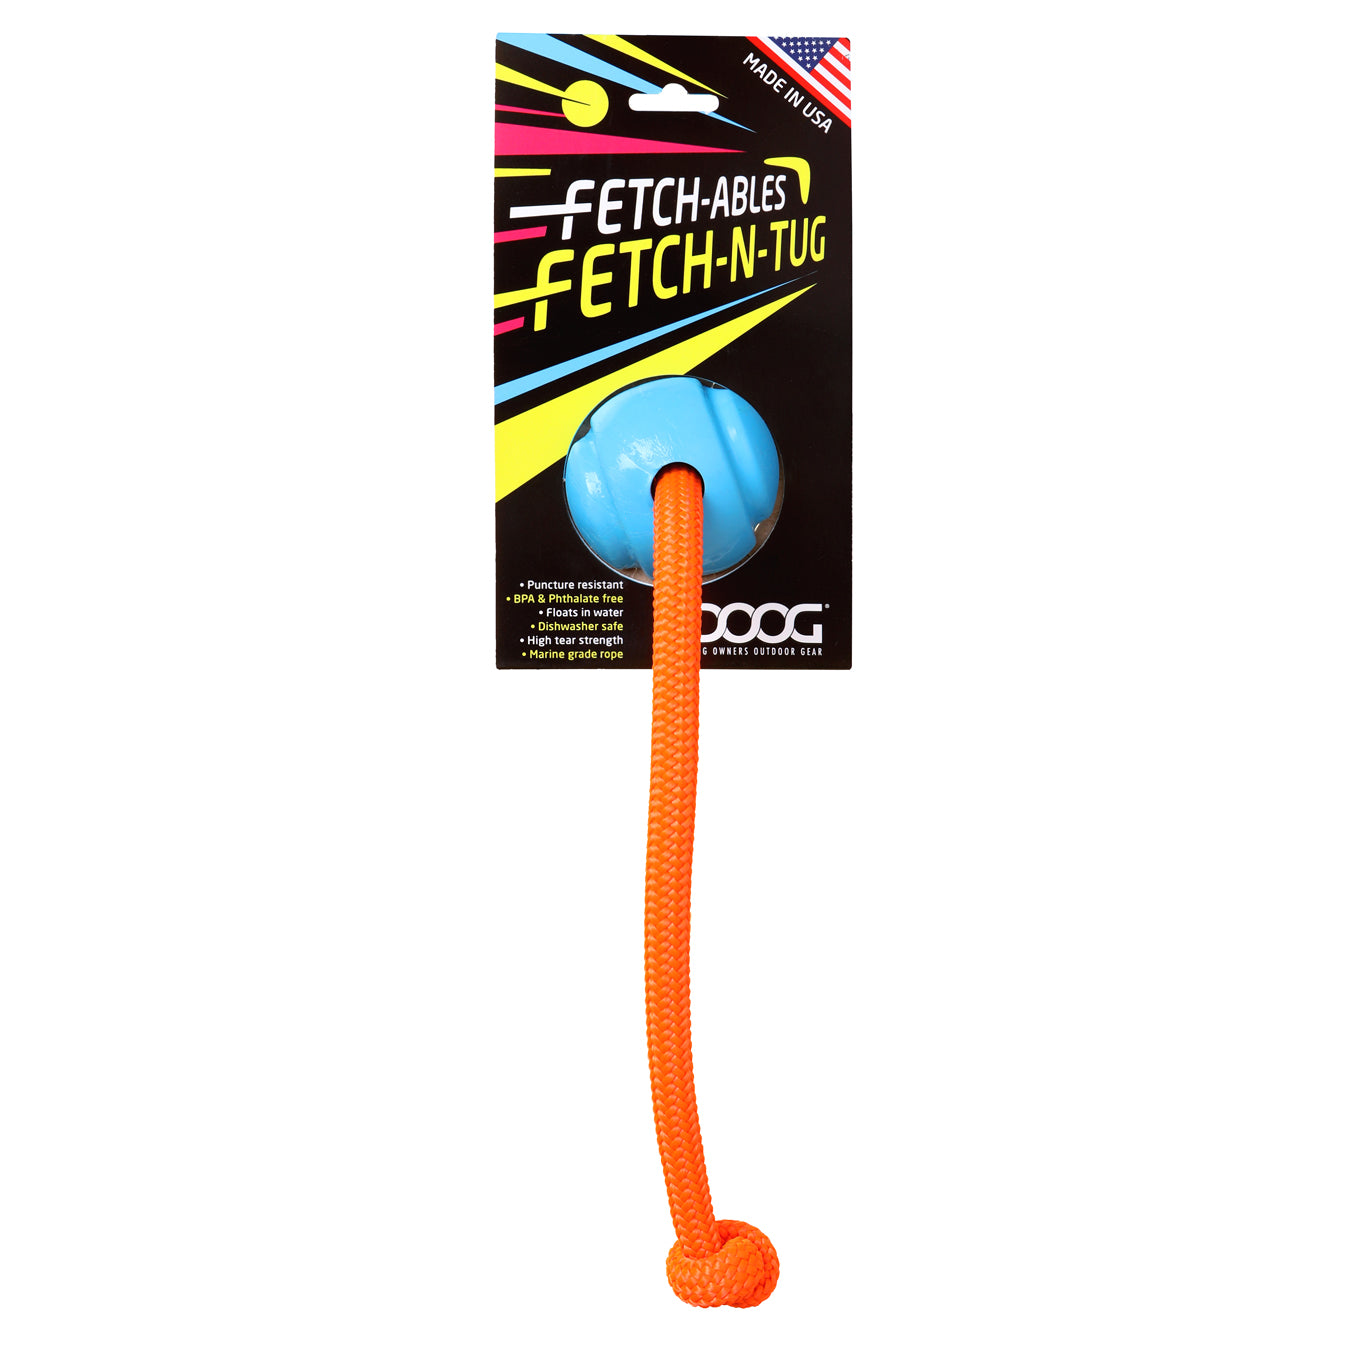 Fetchables - Fetch-N-Tug Ball & Rope – DOOGUSA